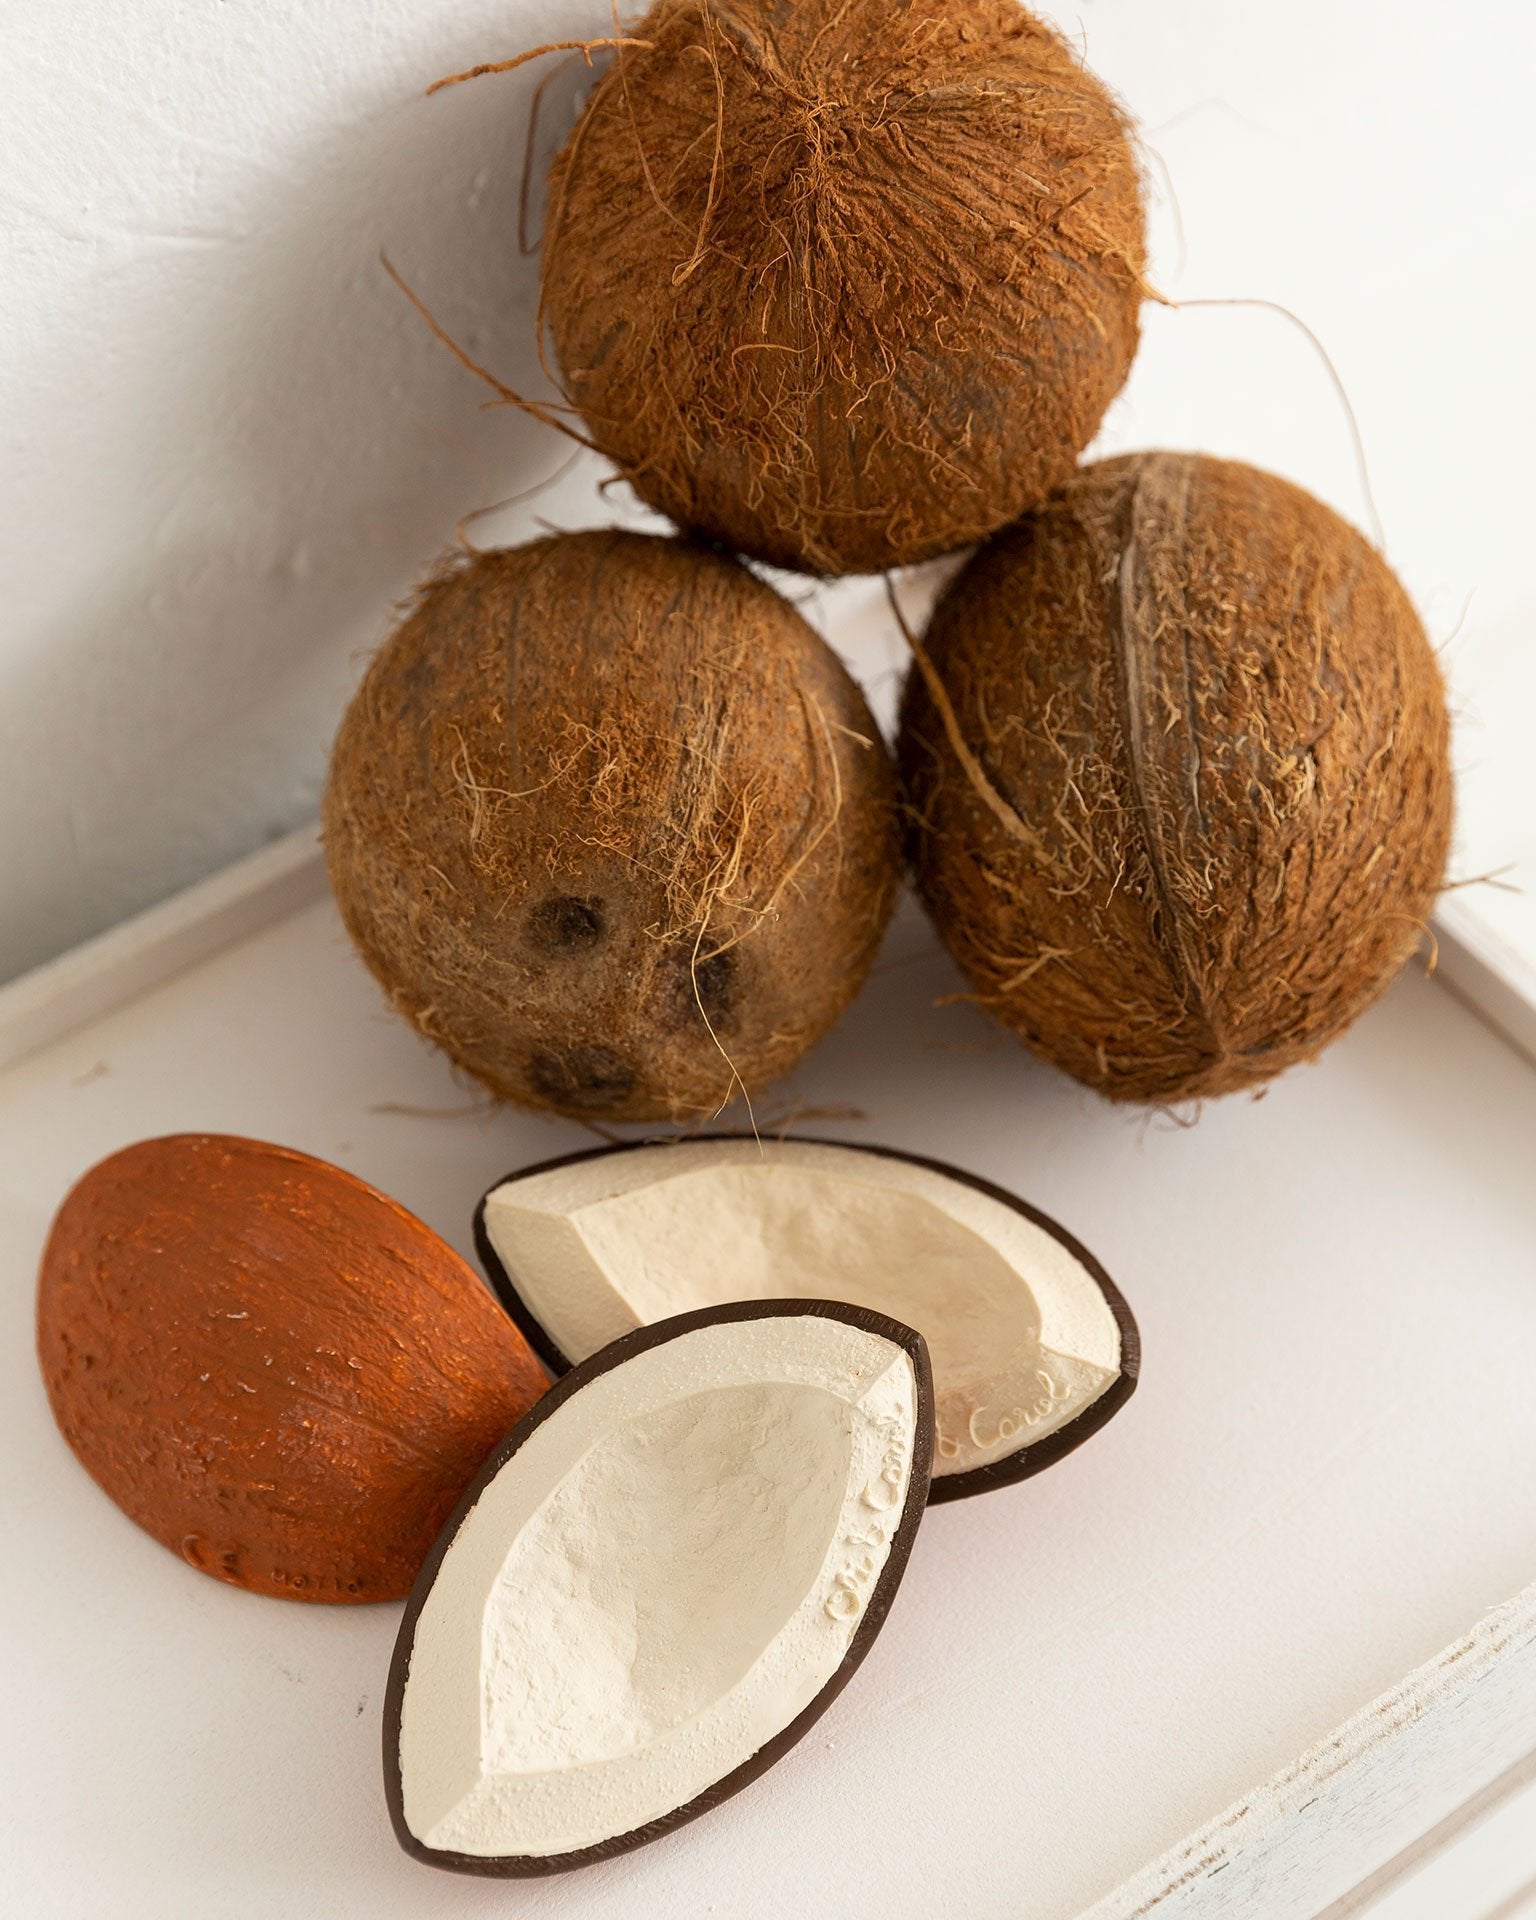 coco the coconut